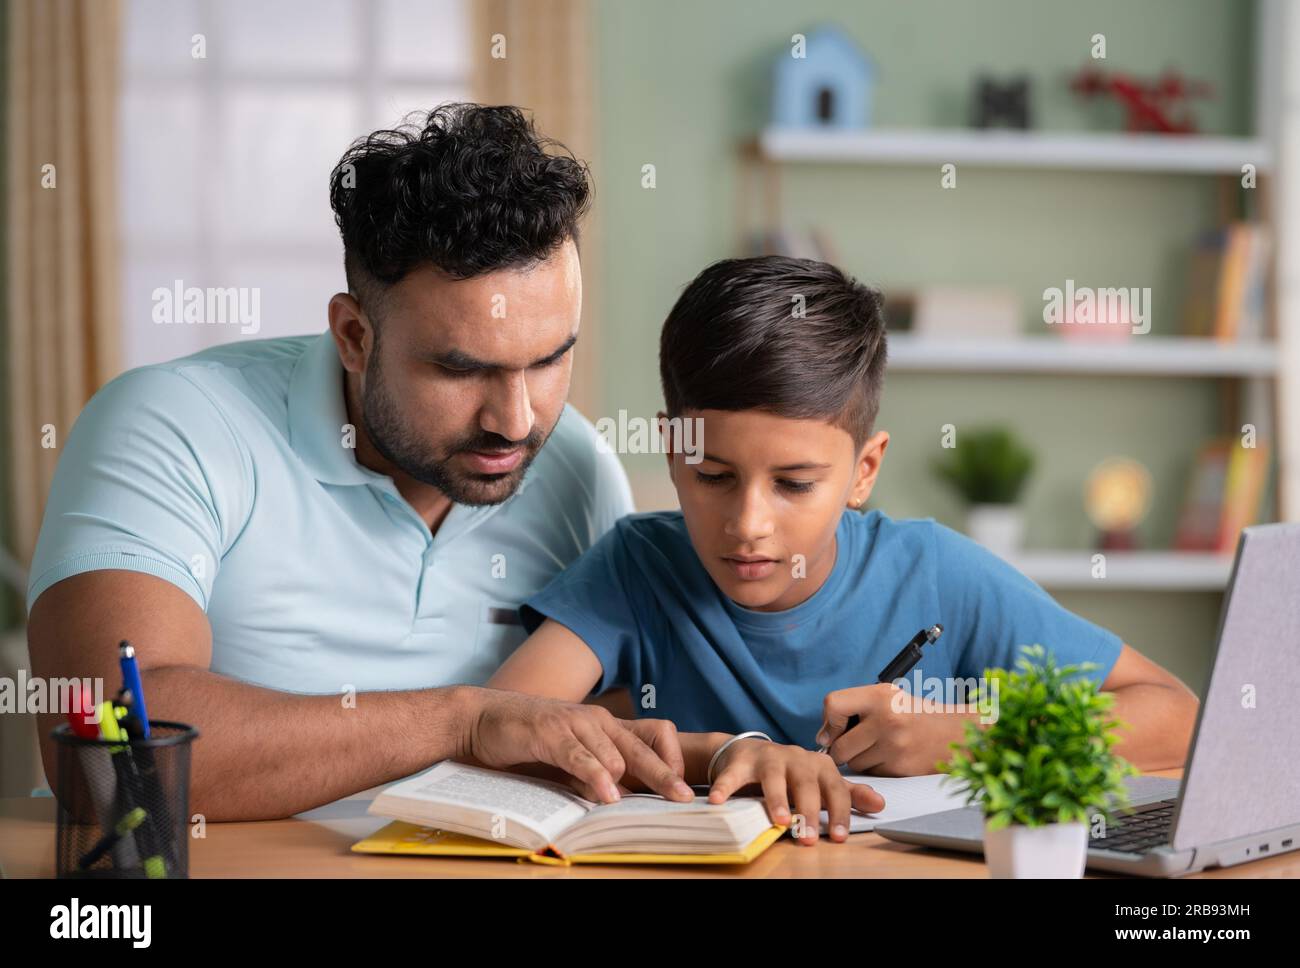 Indischer Vater unterrichtet oder Sohn beim Lesen aus dem Buch zu Hause unterstützt - Konzept der elterlichen Betreuung, Heimunterricht und Tutoring. Stockfoto